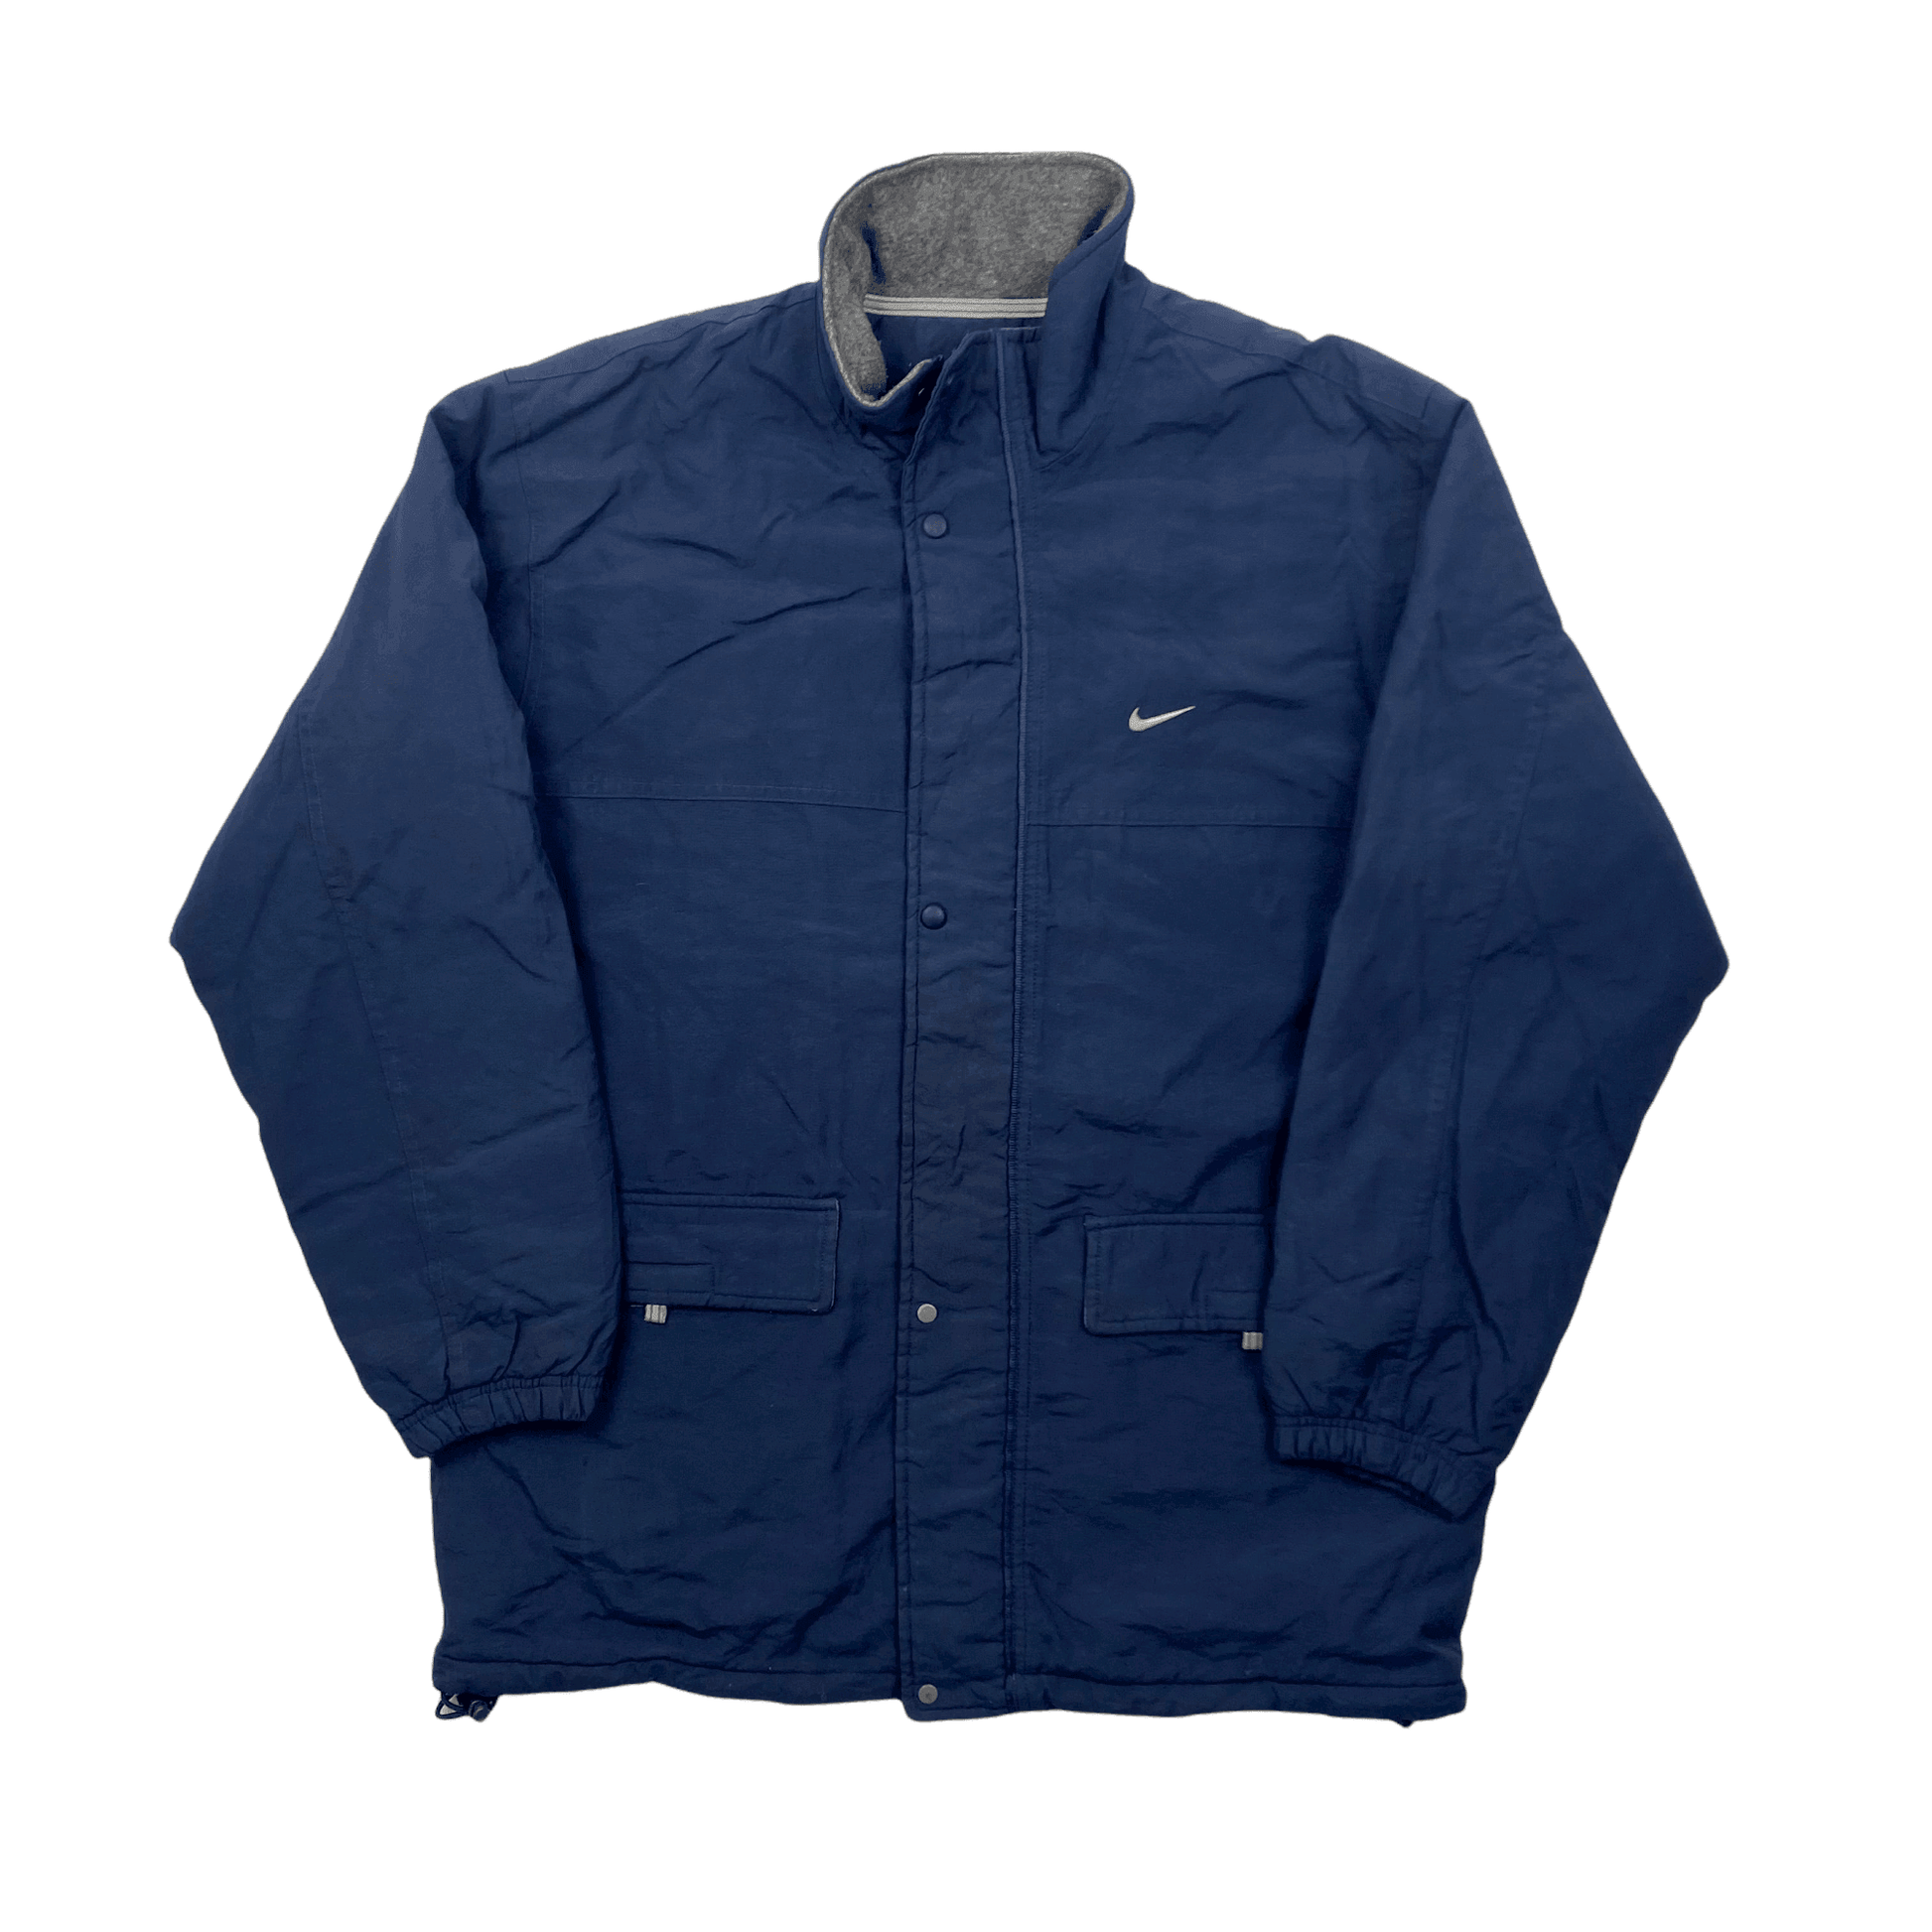 Vintage 90s Navy Blue Nike Coat/ Jacket - Medium - The Streetwear Studio